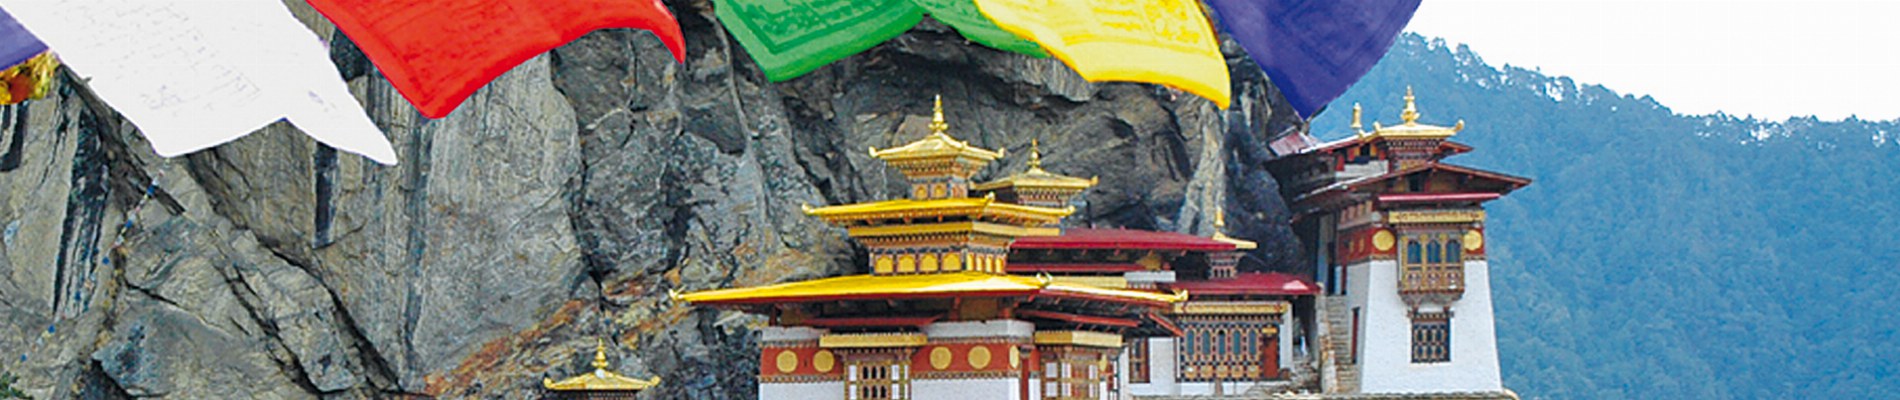 bhutan rundreise